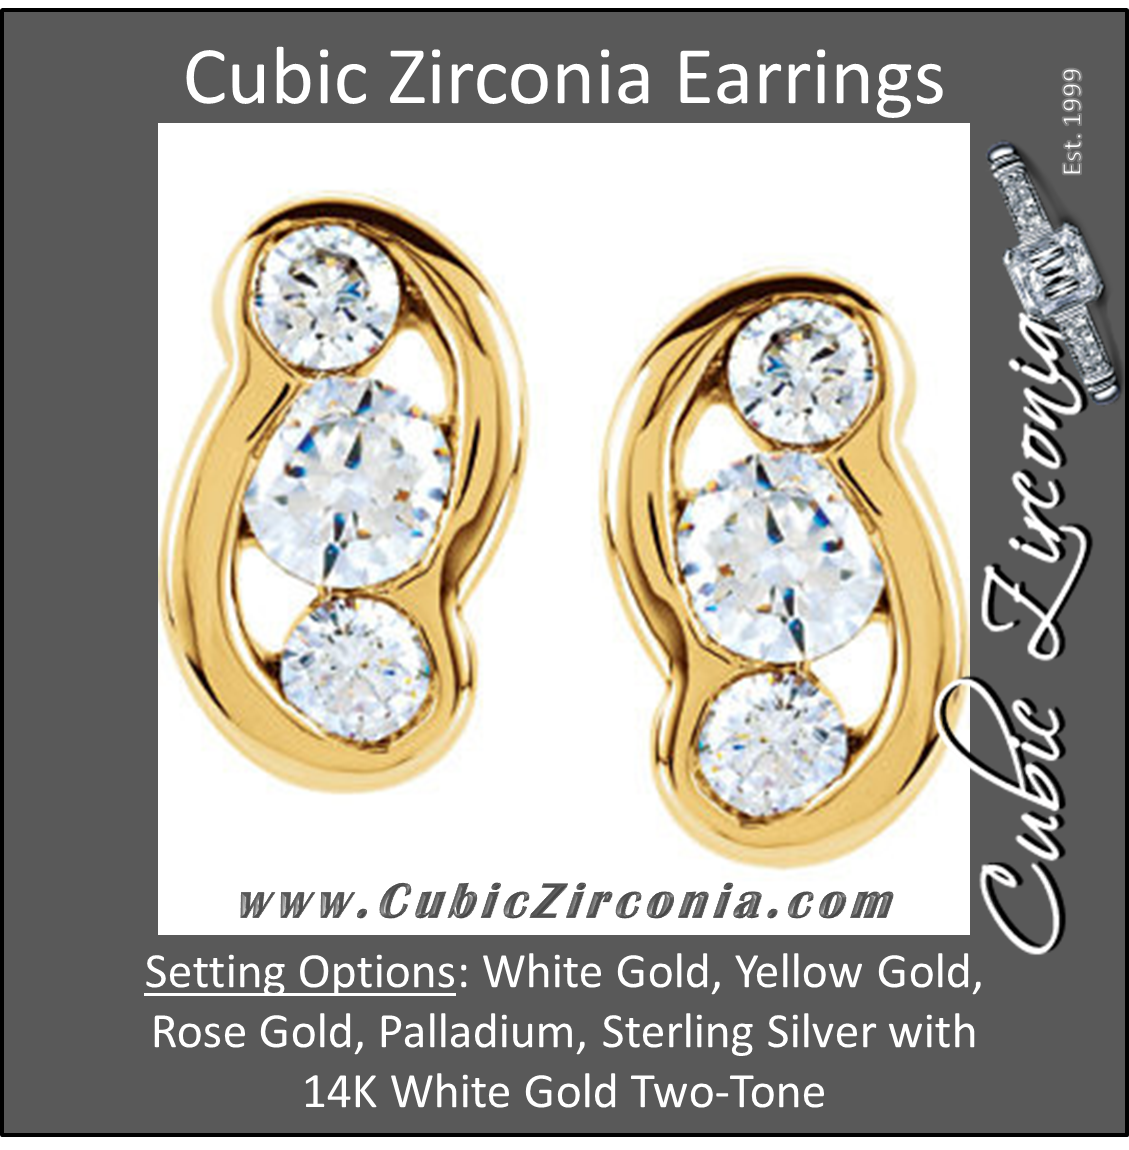 Cubic Zirconia Earrings- 0.54 Carat 3-Stone Channel Setting Earring Set